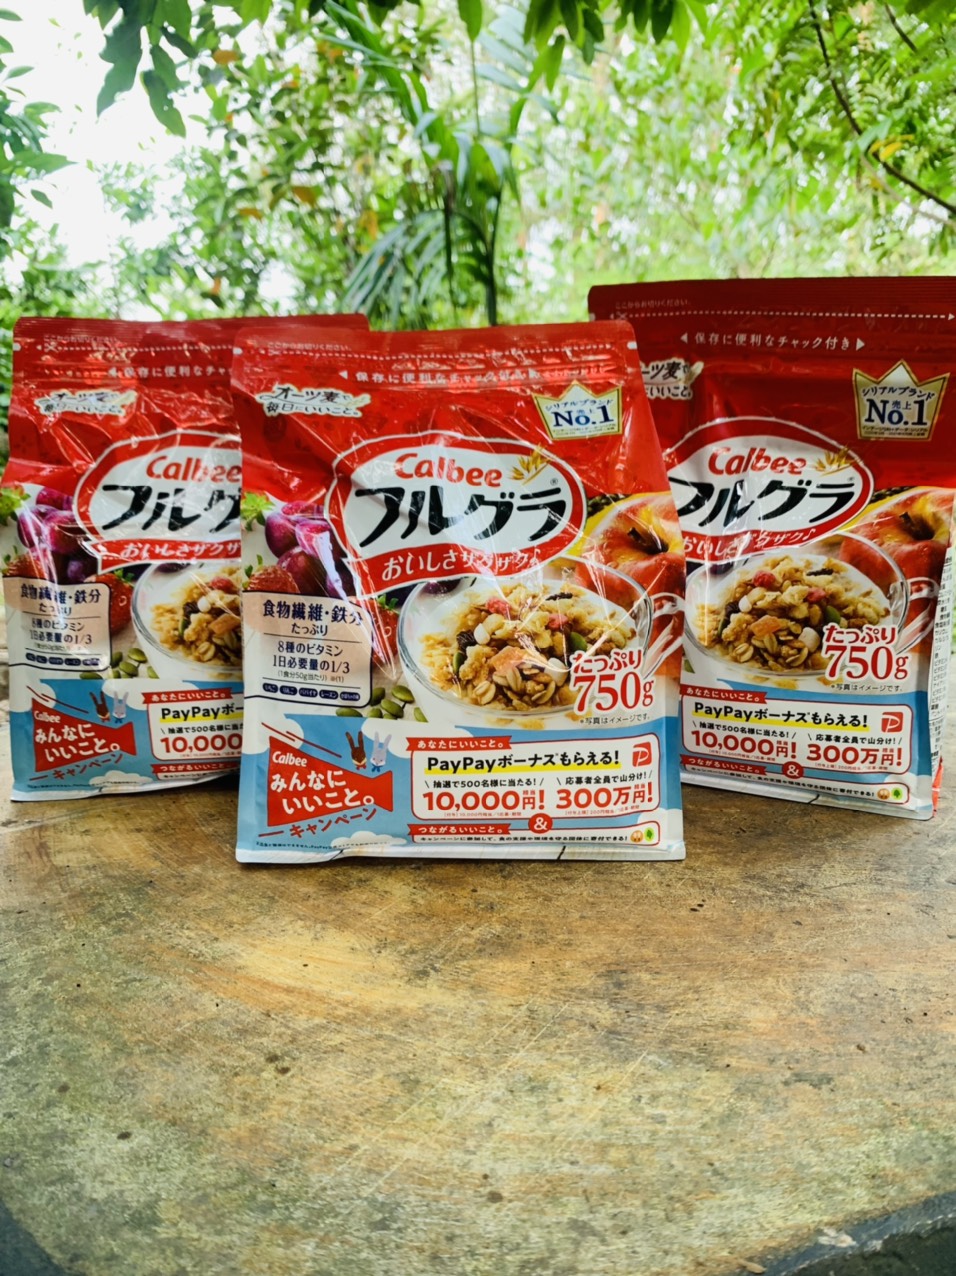 Ngũ cốc Calbee mẫu mới 750g nội địa Nhật Bản - Tặng kèm túi zip 3 kẹo mật ong Senjaku